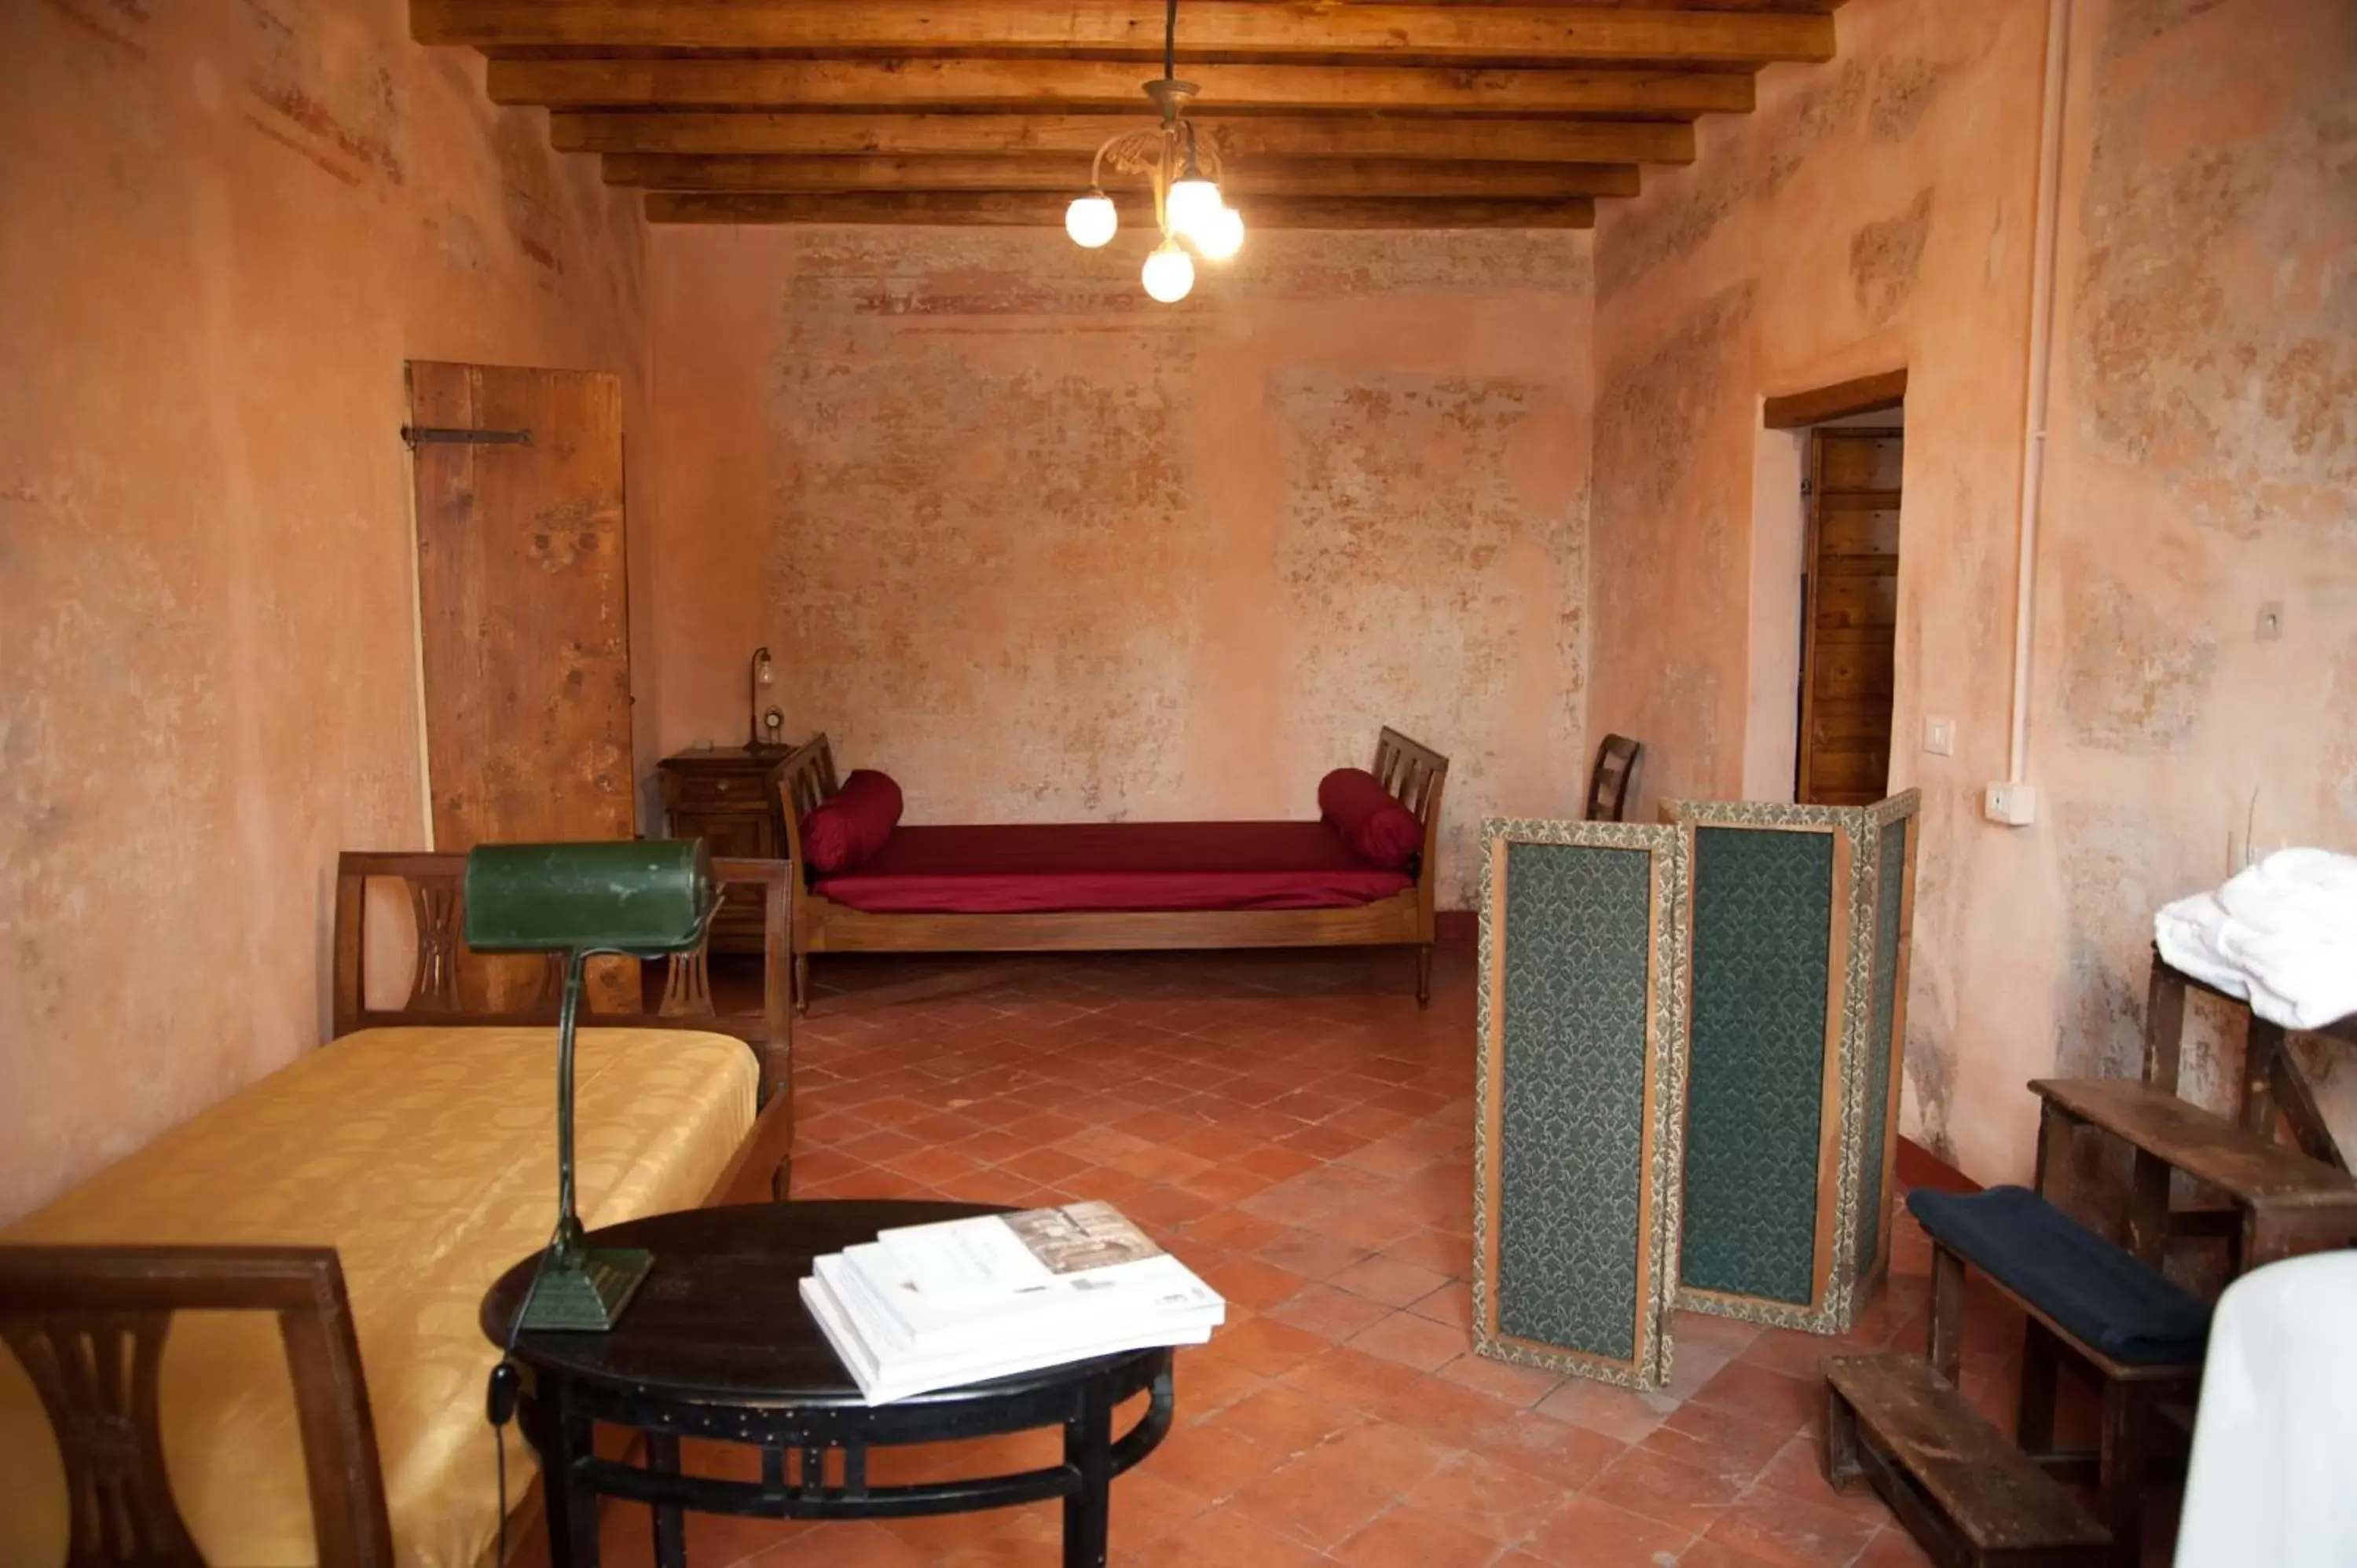 Seating Area in Corte Mantovanella